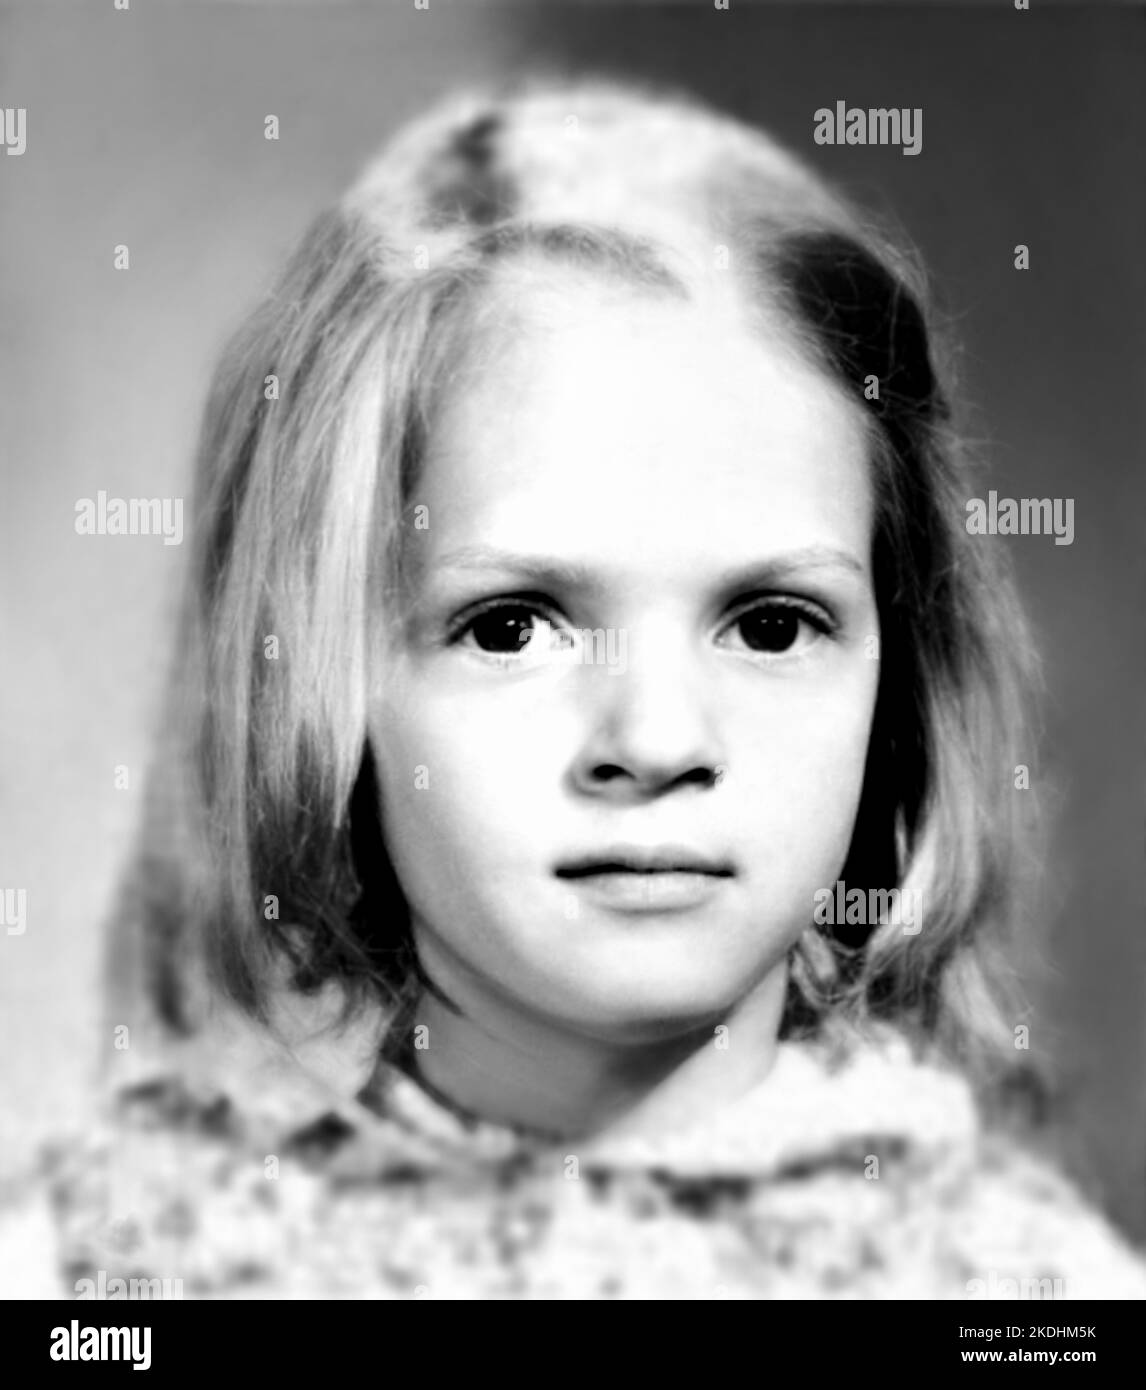 1975 , BOSTON , USA : l'attrice americana UMA THURMAN ( data di nascita 29 aprile 1970 ) quando era una ragazza giovane di 5 anni . Fotografo sconosciuto. - STORIA - FOTO STORICHE - ATTORE - FILM - CINEMA - personalità da giovani da giovani - personalità quando era giovane - INFANZIA - INFANZIA - BAMBINO - BAMBINI --- ARCHIVIO GBB Foto Stock